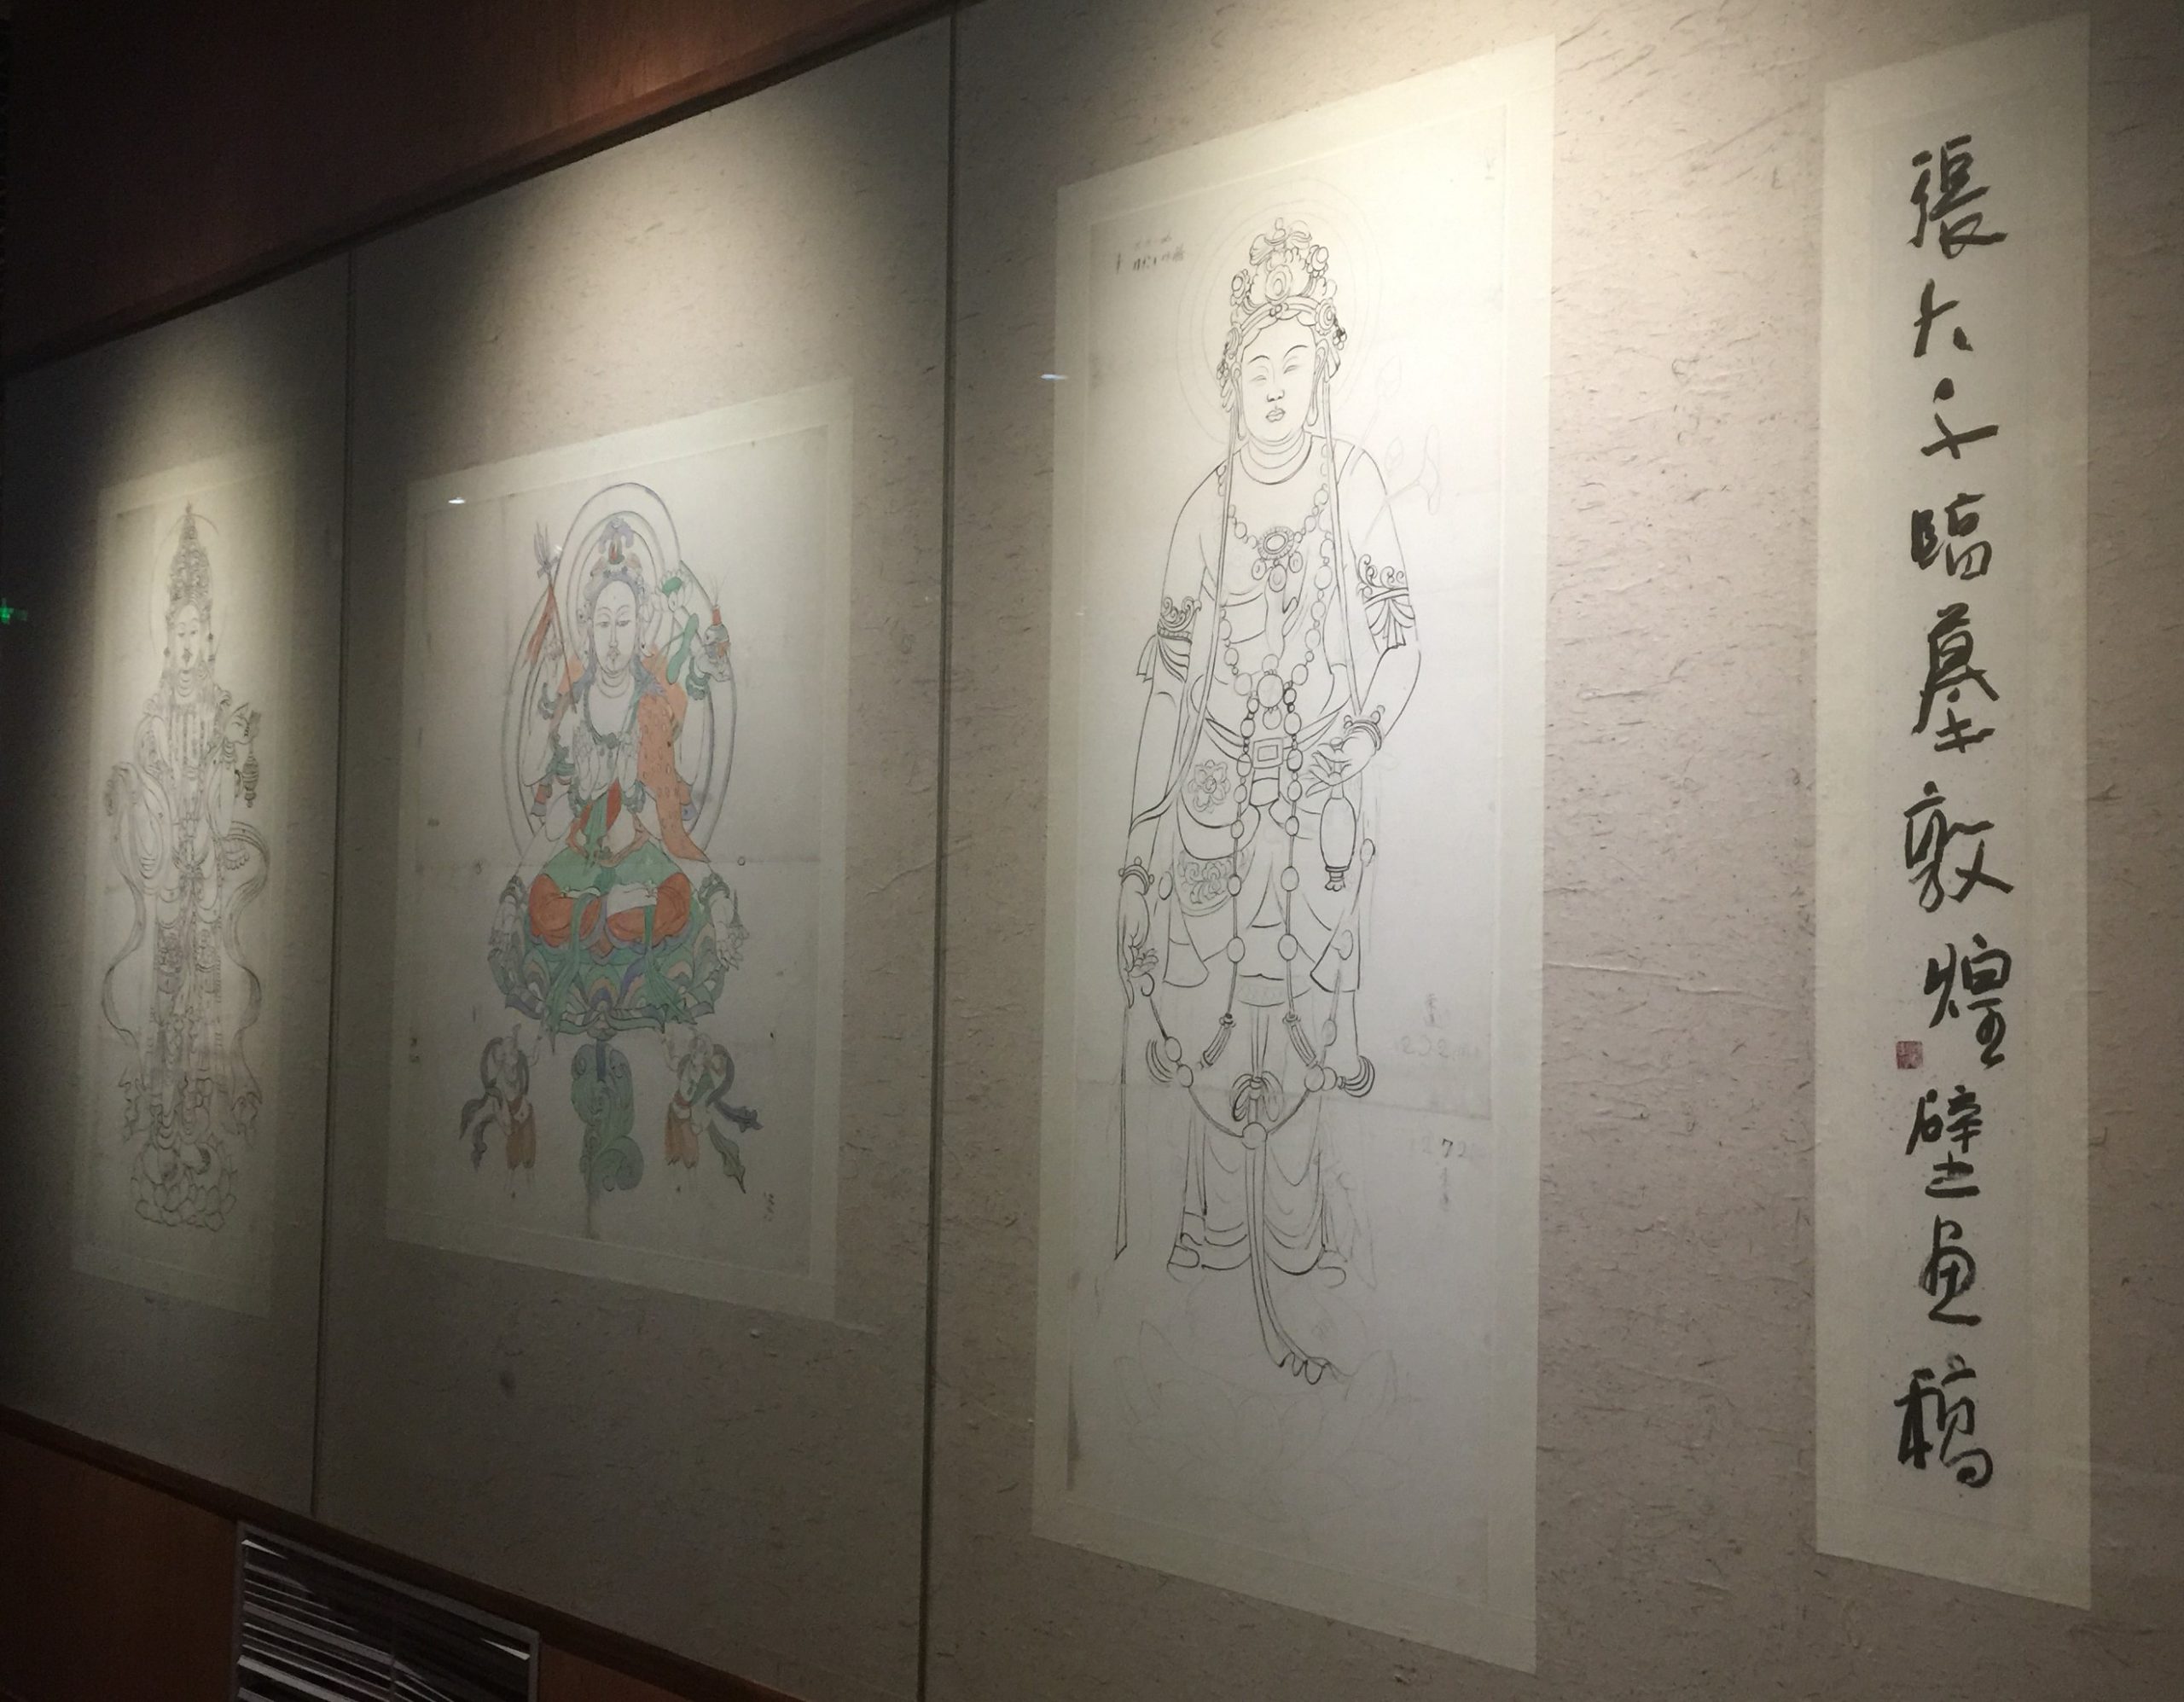 張大千臨摹敦煌壁画稿-張大千芸術館-四川博物院-成都